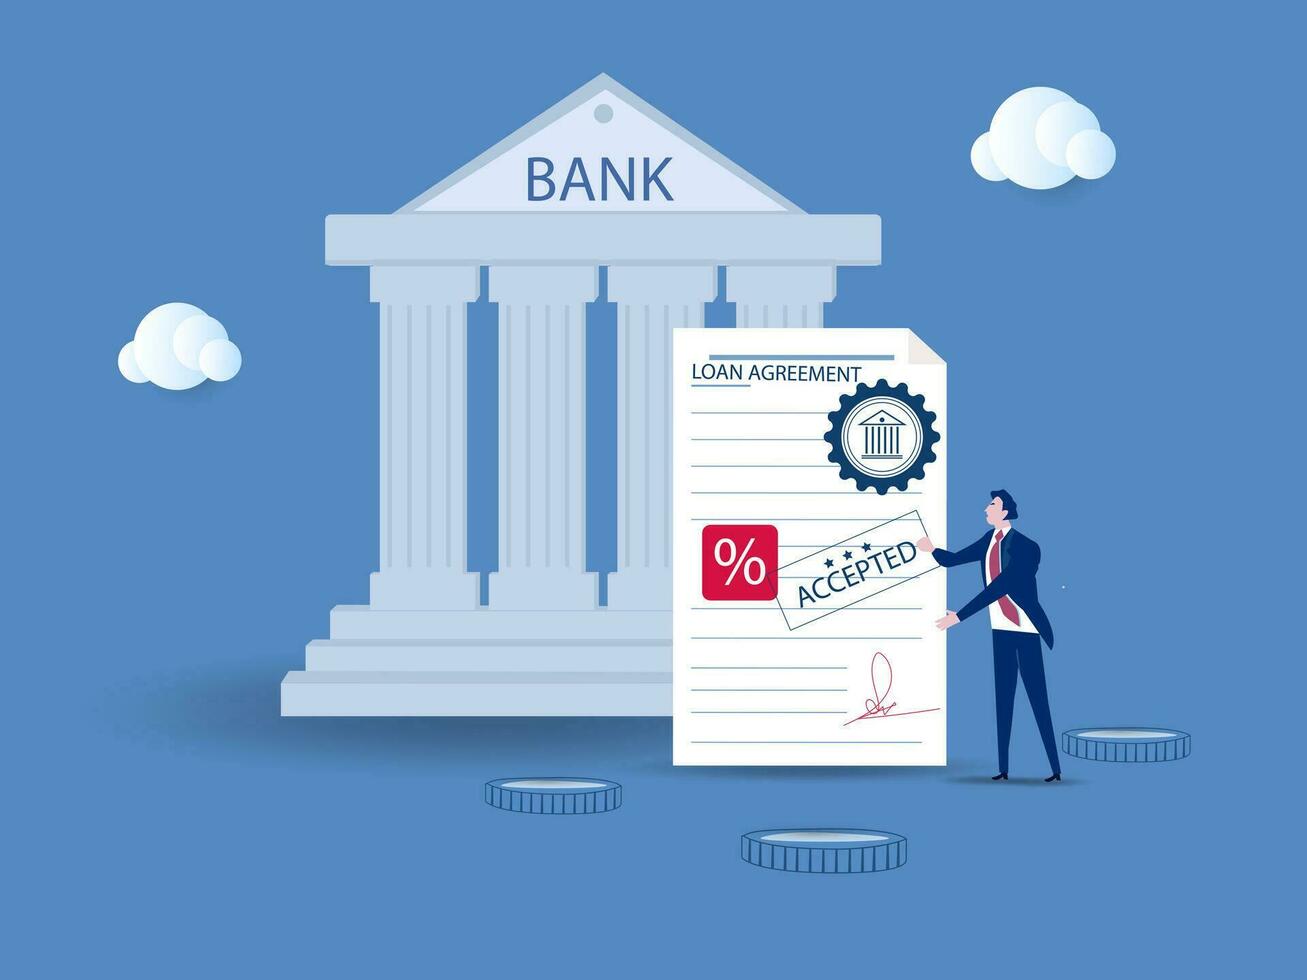 skuld eller Bank lån ansvarig till betala tillbaka med intressera Betygsätta, Rättslig pengar kreditera eller upp- dokumentera med signatur begrepp, affärsman signering signatur på skyldighet bank dokumentera. vektor